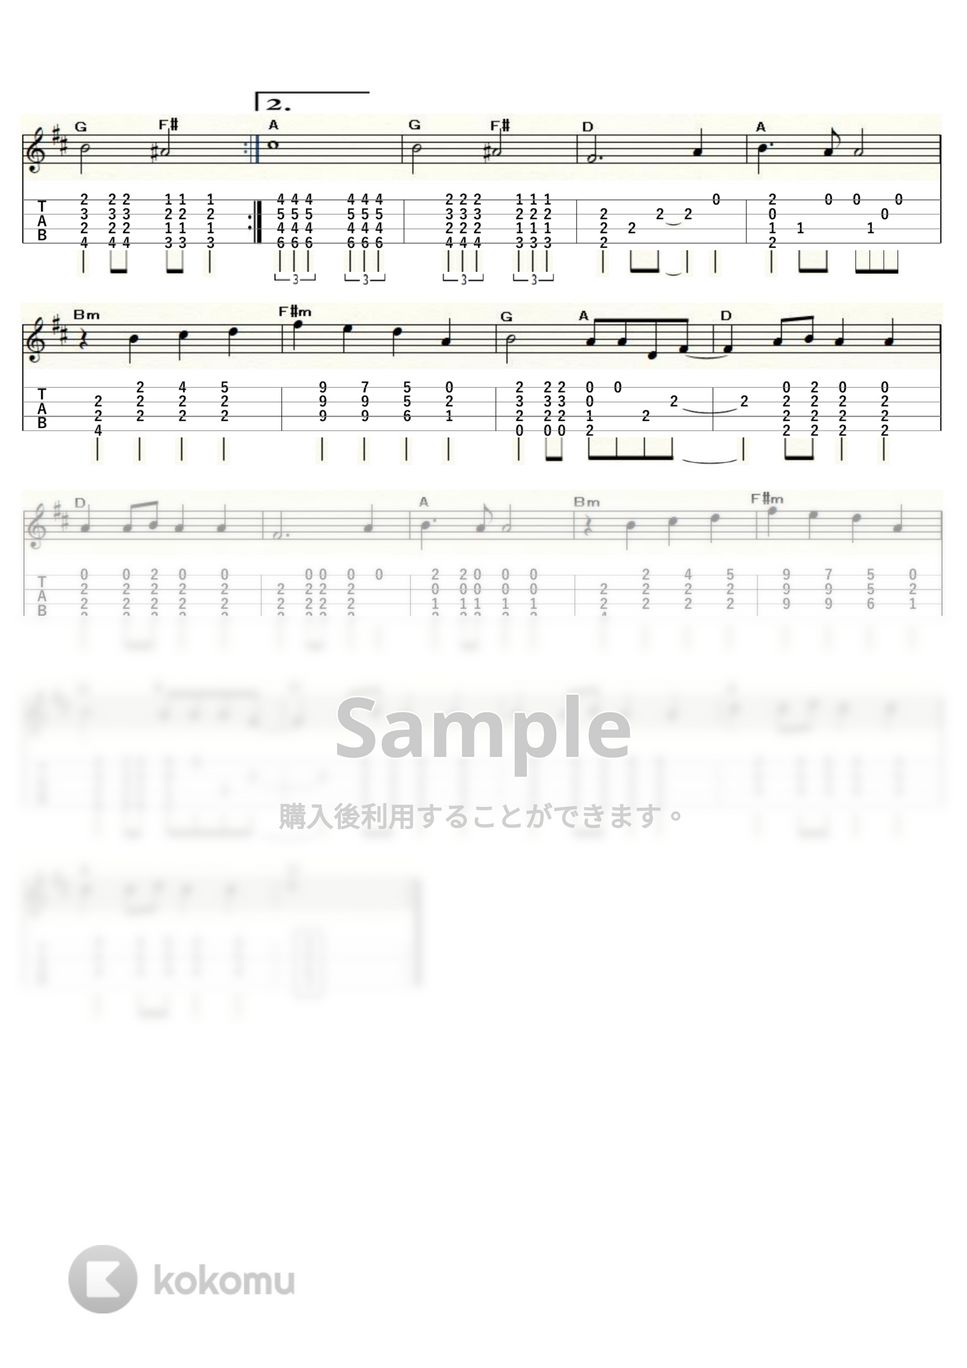 シルヴィ・ヴァルタン - あなたのとりこ (ｳｸﾚﾚｿﾛ/High-G・Low-G/中級) by ukulelepapa